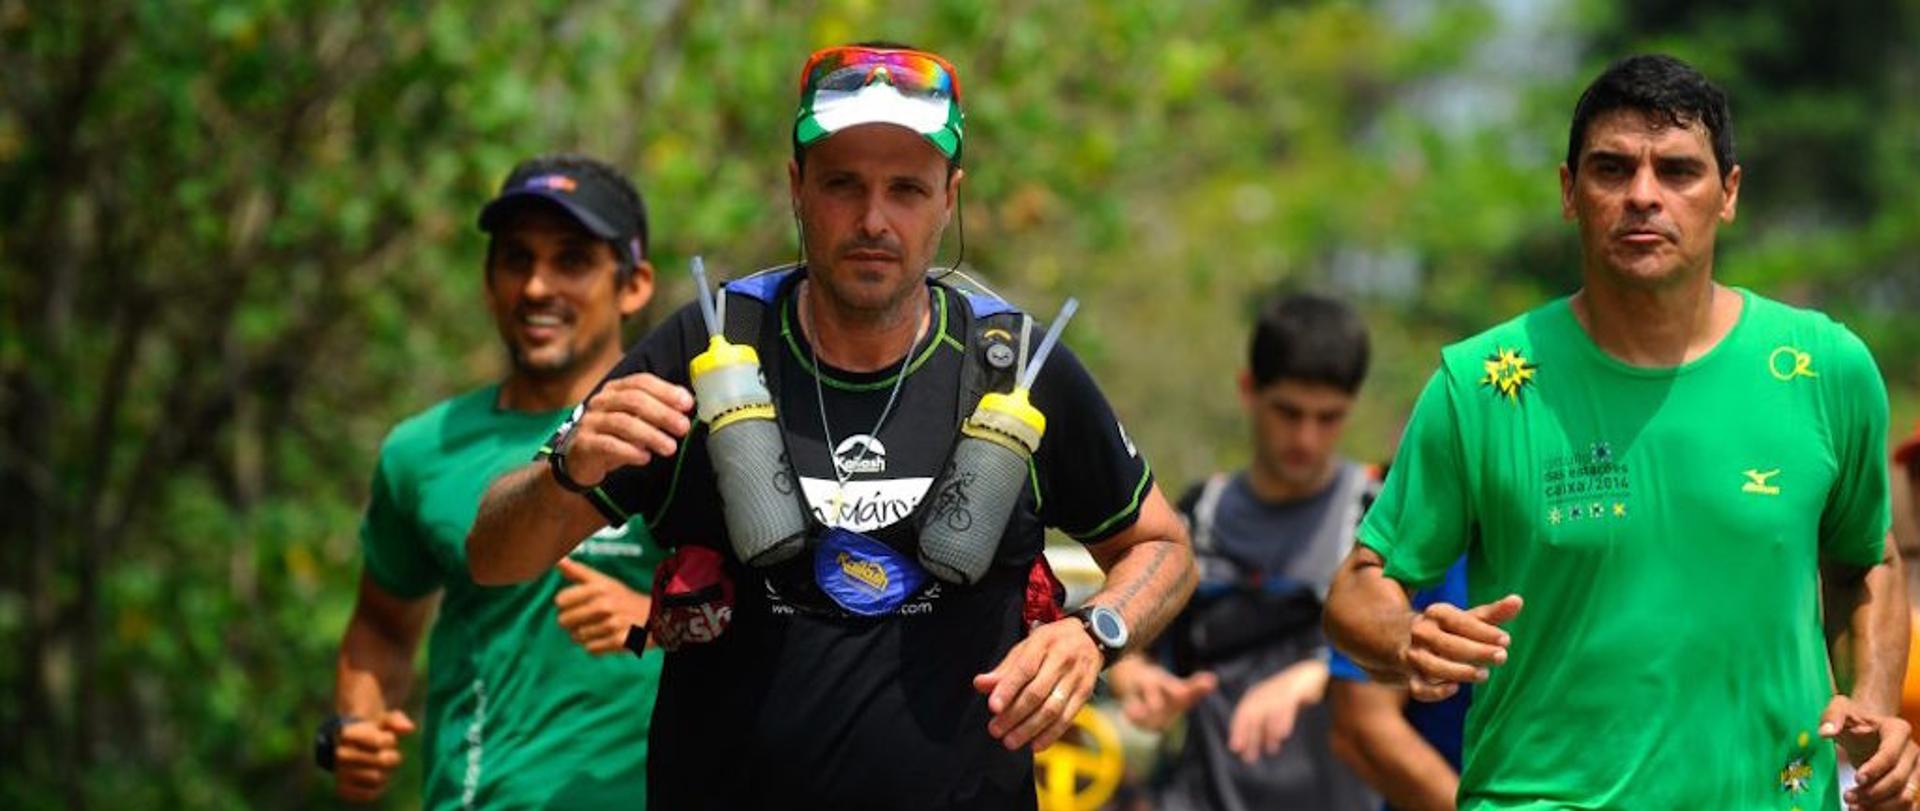 Ultramaratonista Marcio Villar promove evento solidário na Lagoa Rodrigo de Freitas, entre 7h e 17h, para arrecadar mantimentos para o Inca. (Divulgação)